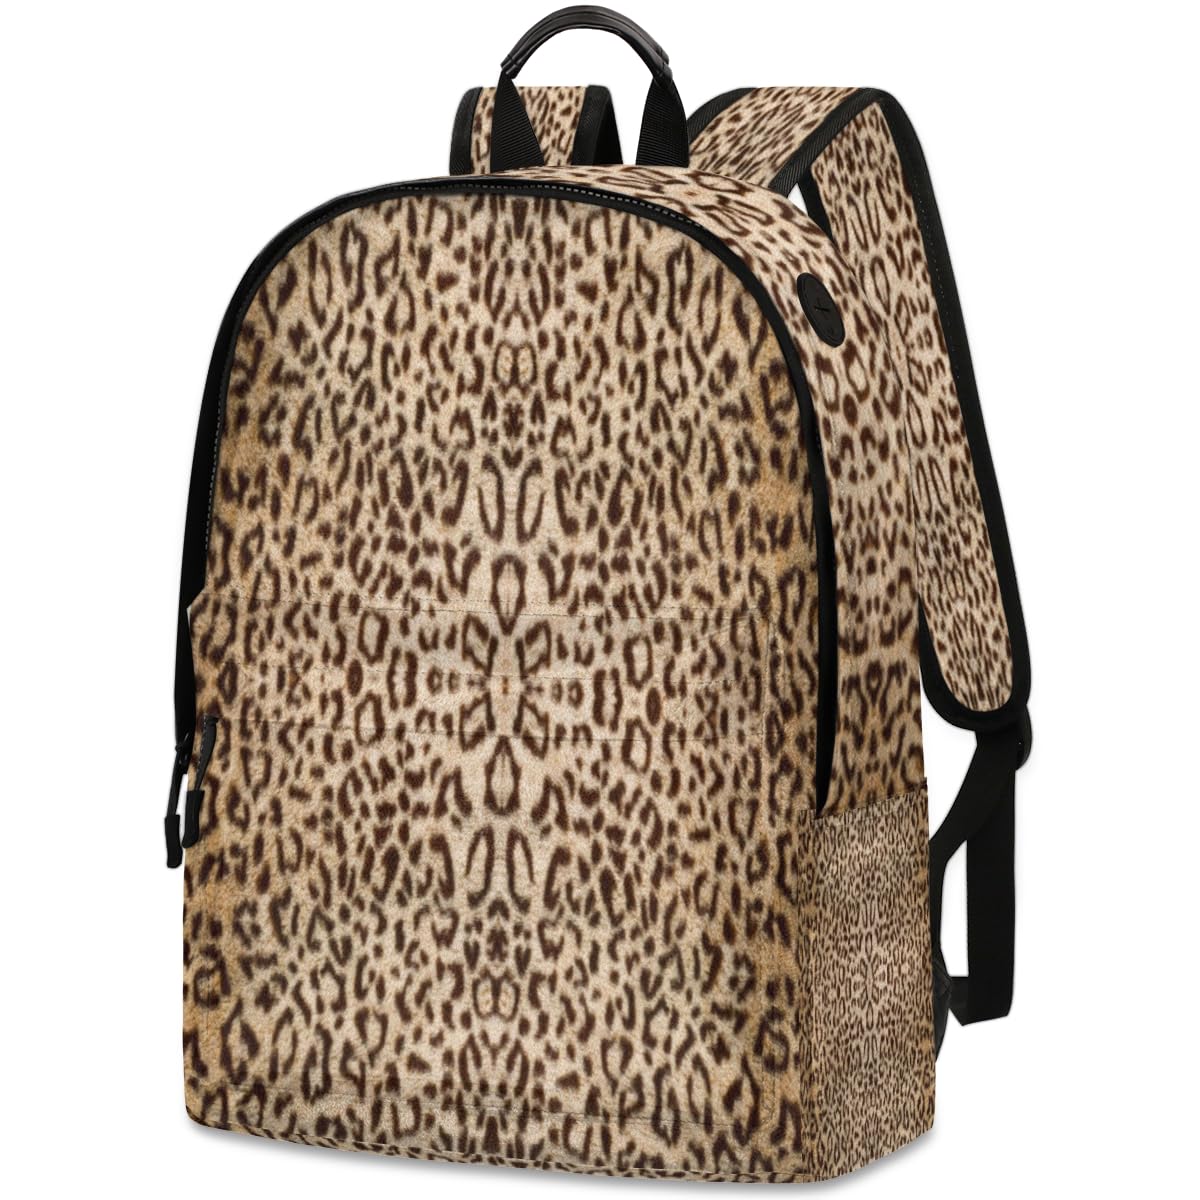 送料無料QsirBC Abstract Animal Skin Printing Leather Backpack for Women Laptop Backpack Zipper Closure Adjustable Strap D